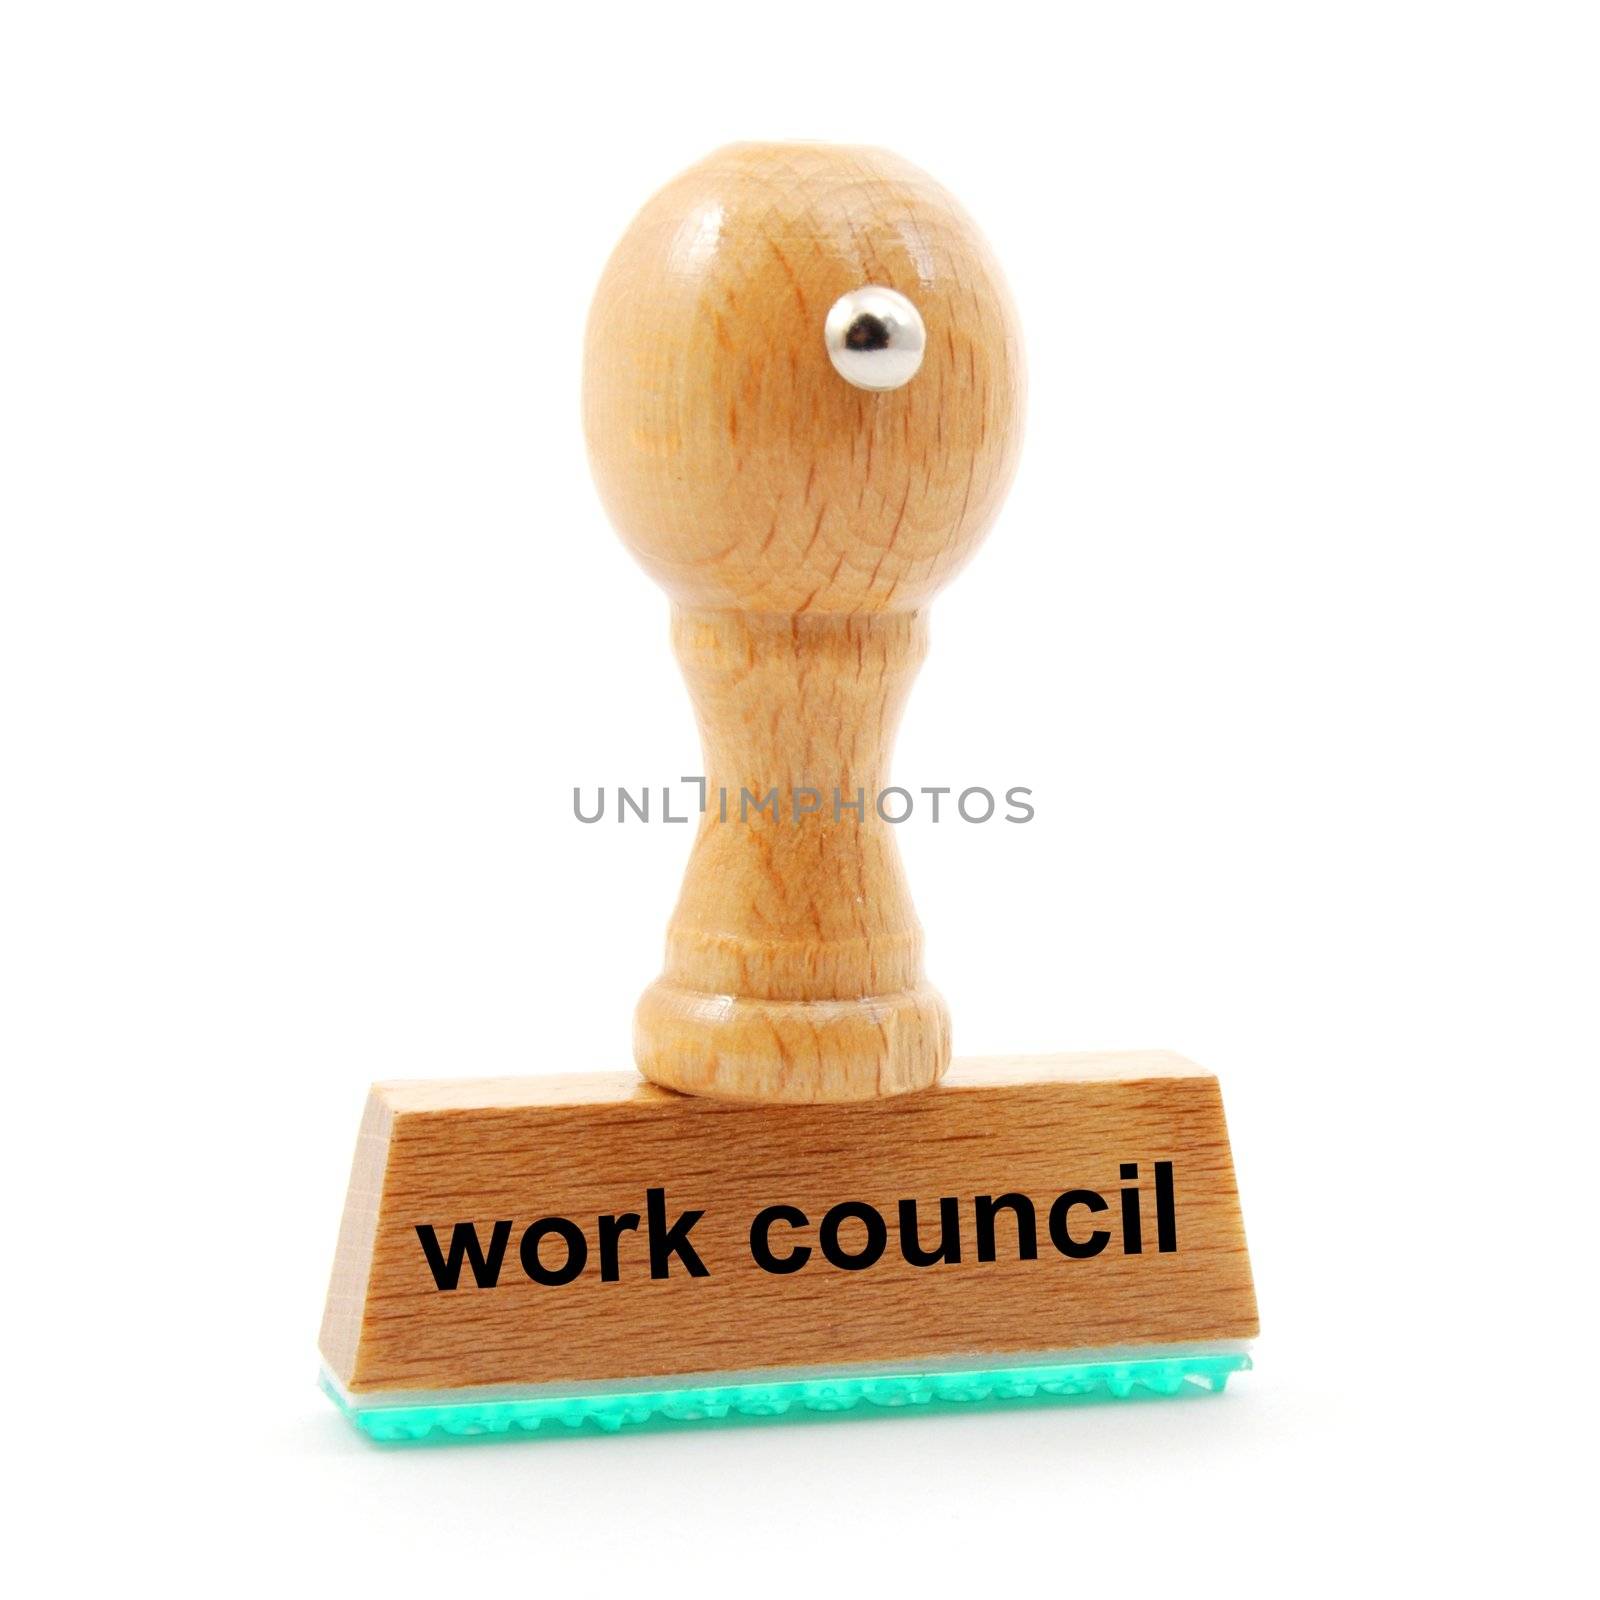 work council by gunnar3000